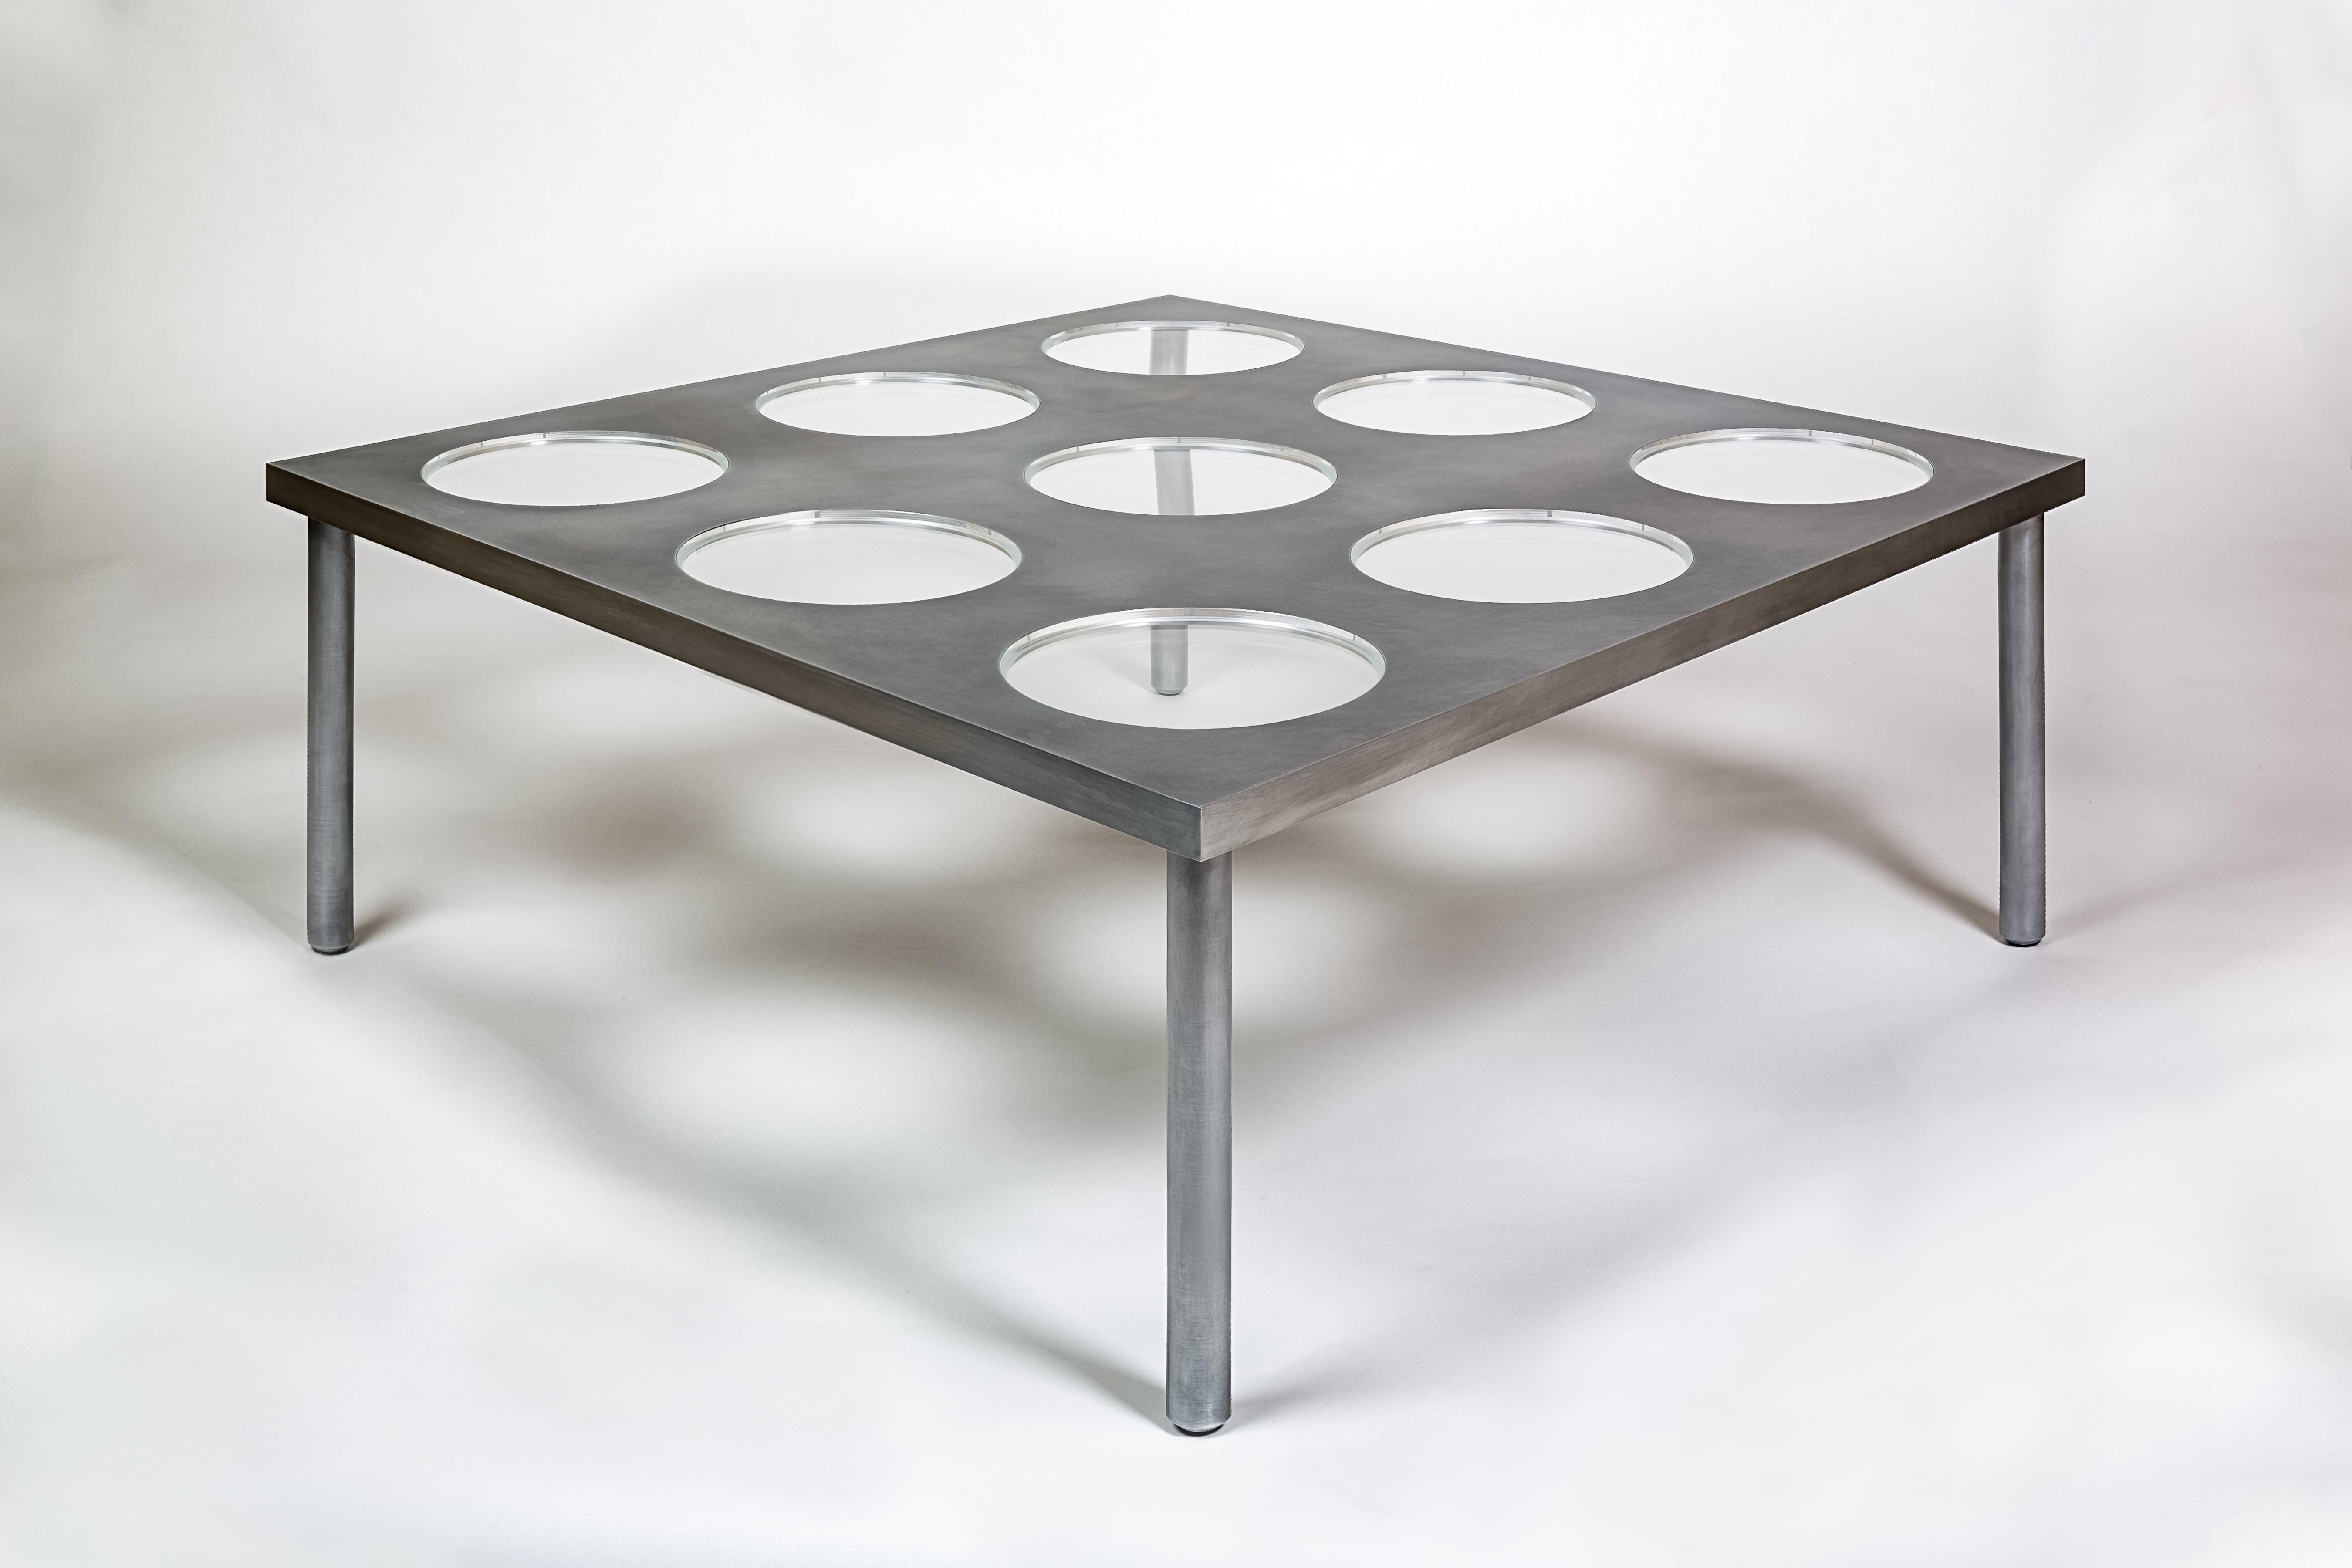 Der Tisch IRWIN besteht aus einer massiven, gefrästen 1 Zoll dicken Aluminiumplatte mit präzise gefrästem und poliertem Acryl. Die Beine bestehen aus CNC-gefrästem, massivem Aluminium mit einem Durchmesser von 1 und einem Viertel Zoll. Die